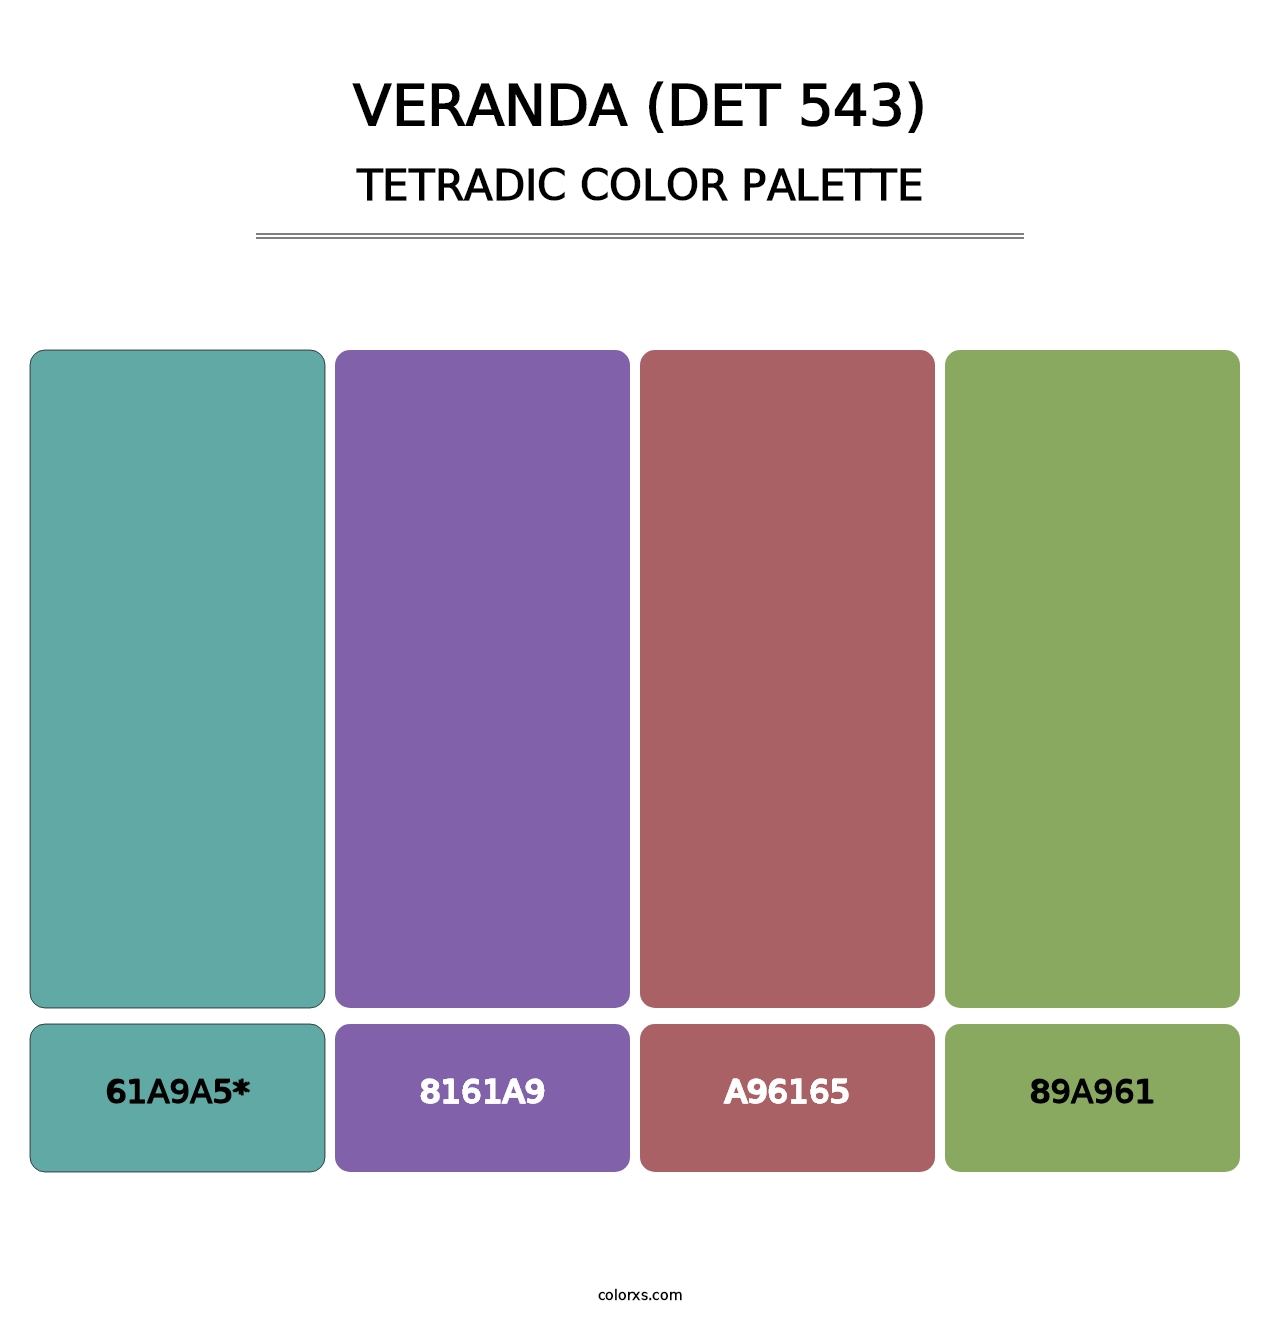 Veranda (DET 543) - Tetradic Color Palette